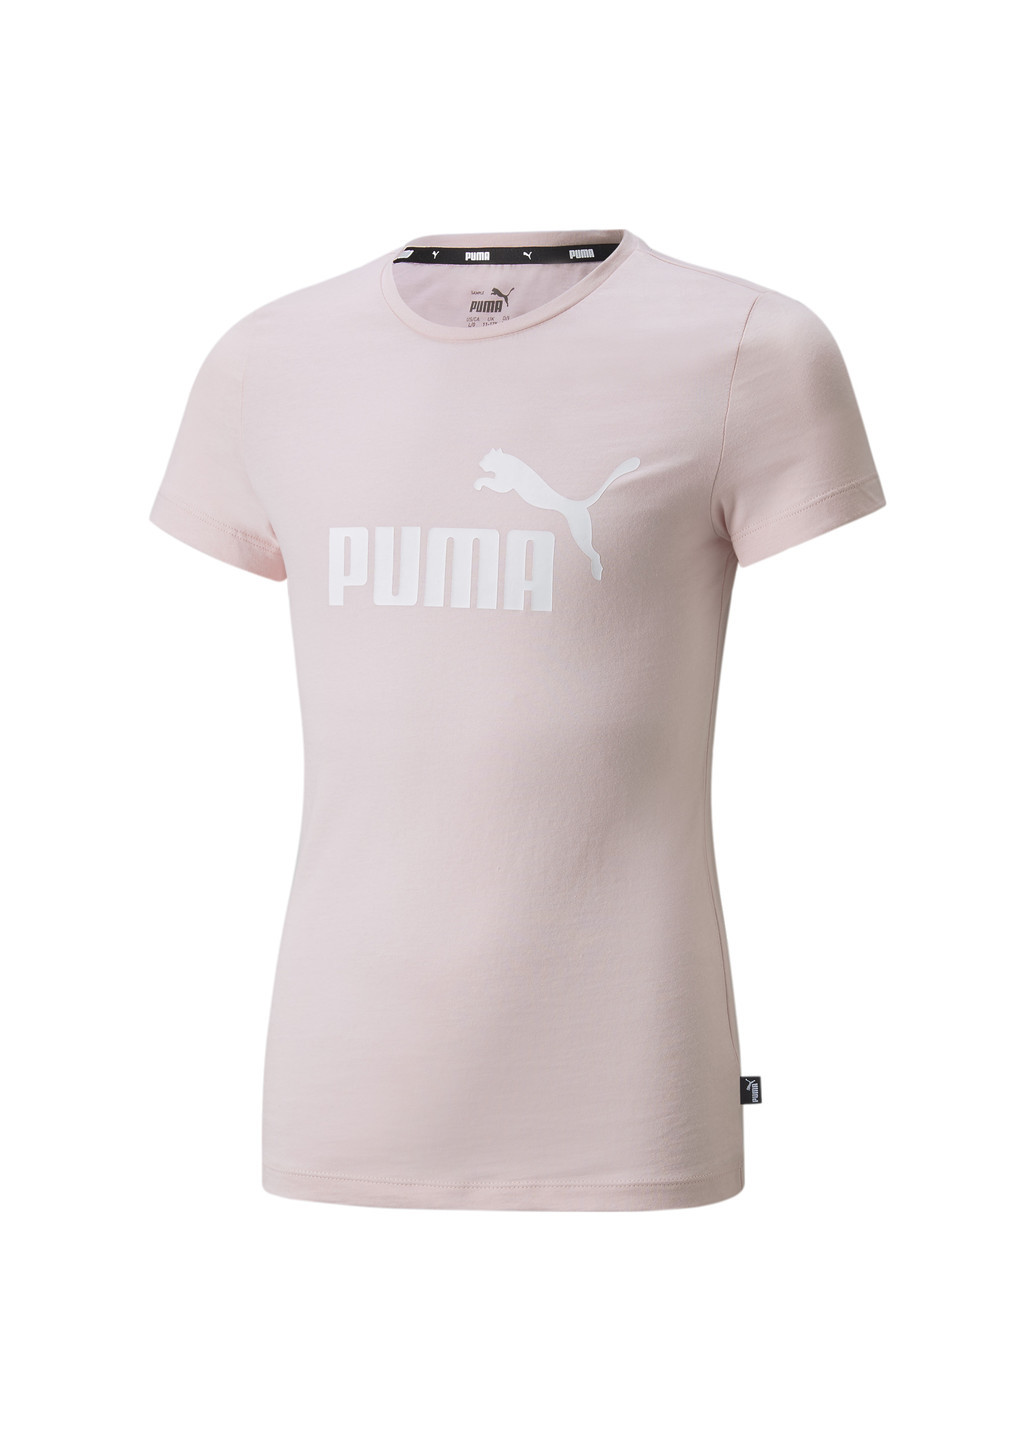 Детская футболка Essentials Logo Youth Tee Puma однотонная розовая спортивная хлопок